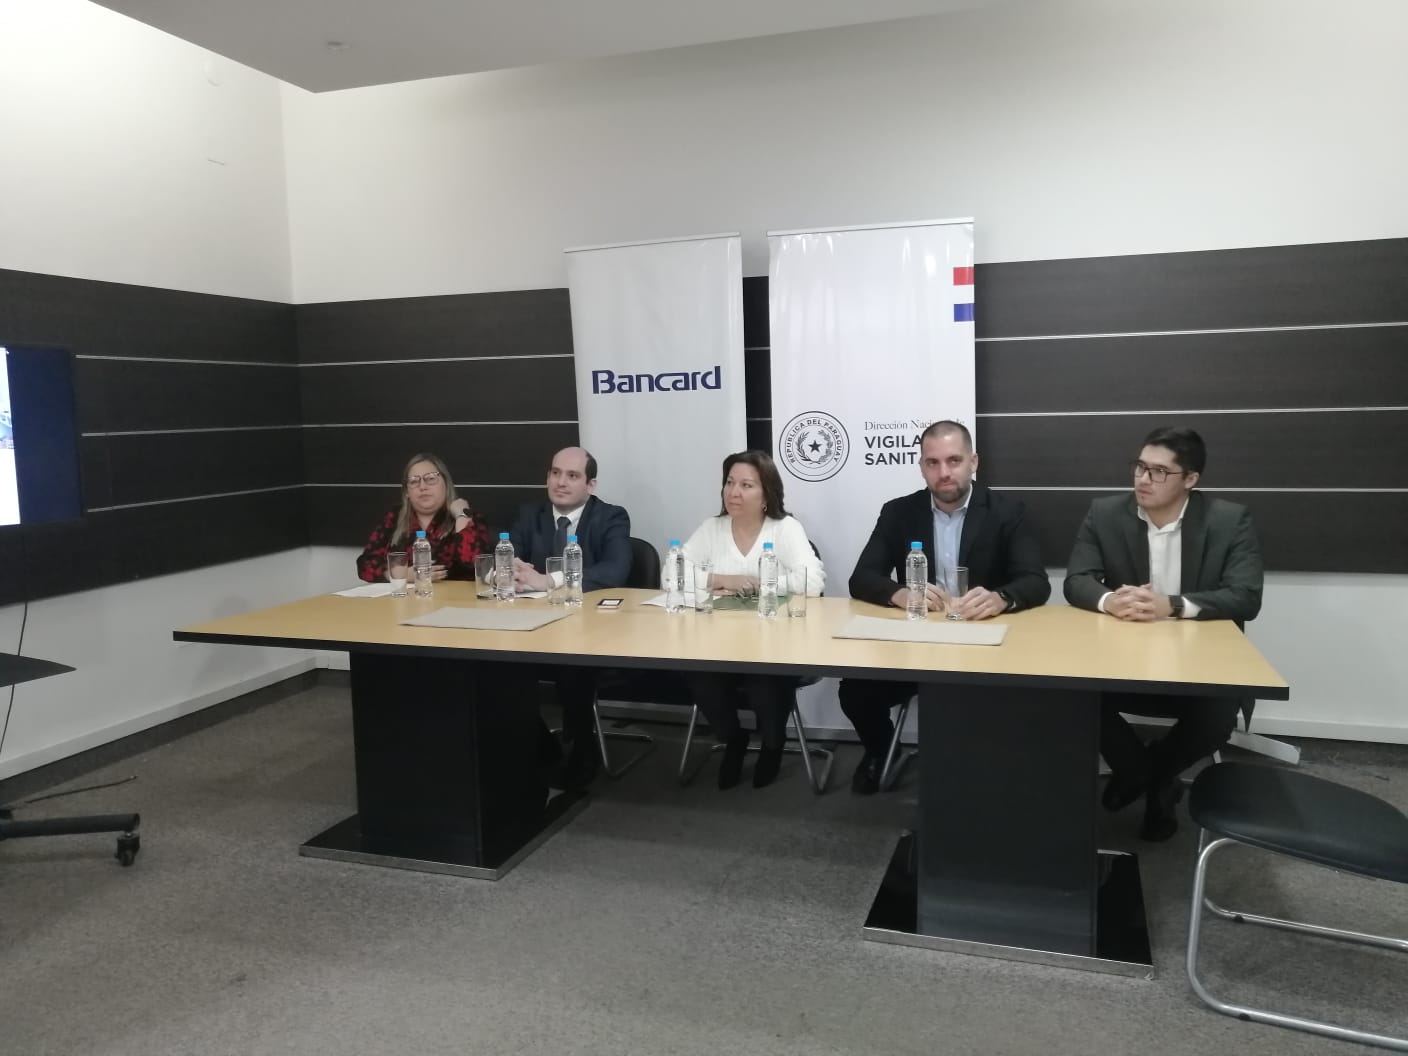 Conferencia de prensa entre representantes de Dinavisa y Bancard. Gentileza